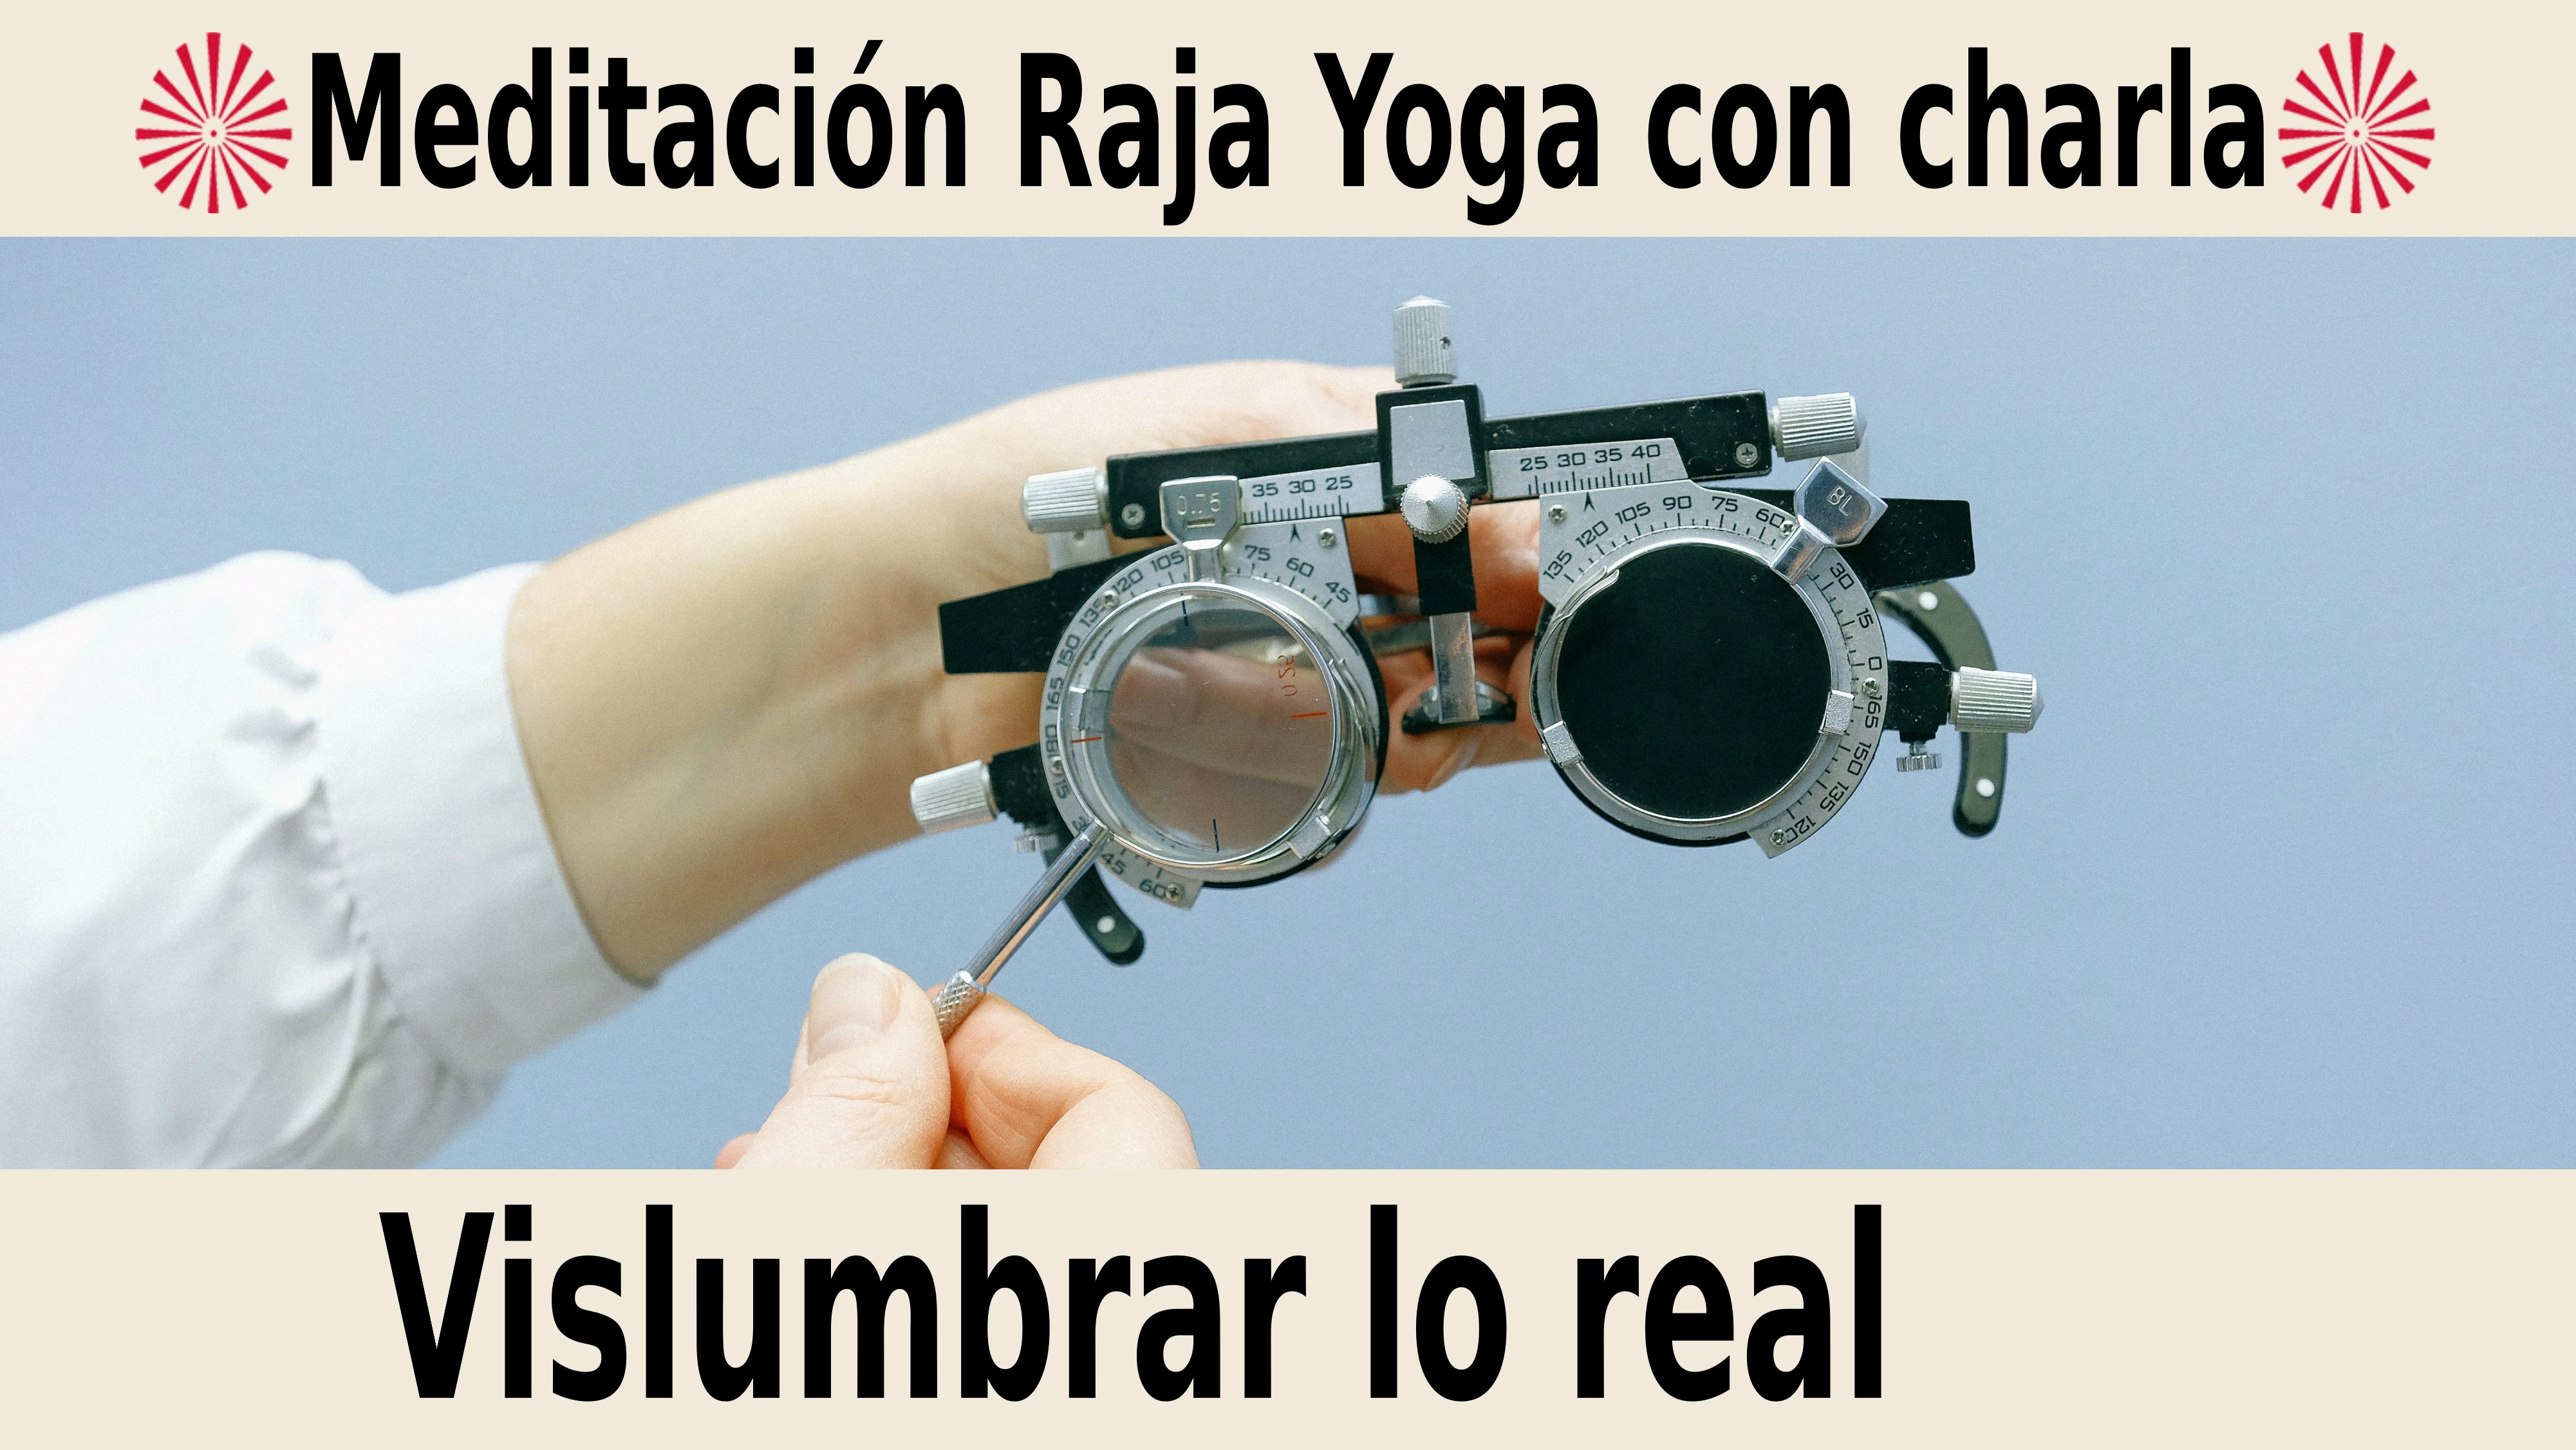 Meditación Raja Yoga con charla:  Vislumbrar lo real (27 Noviembre 2020) On-line desde Barcelona